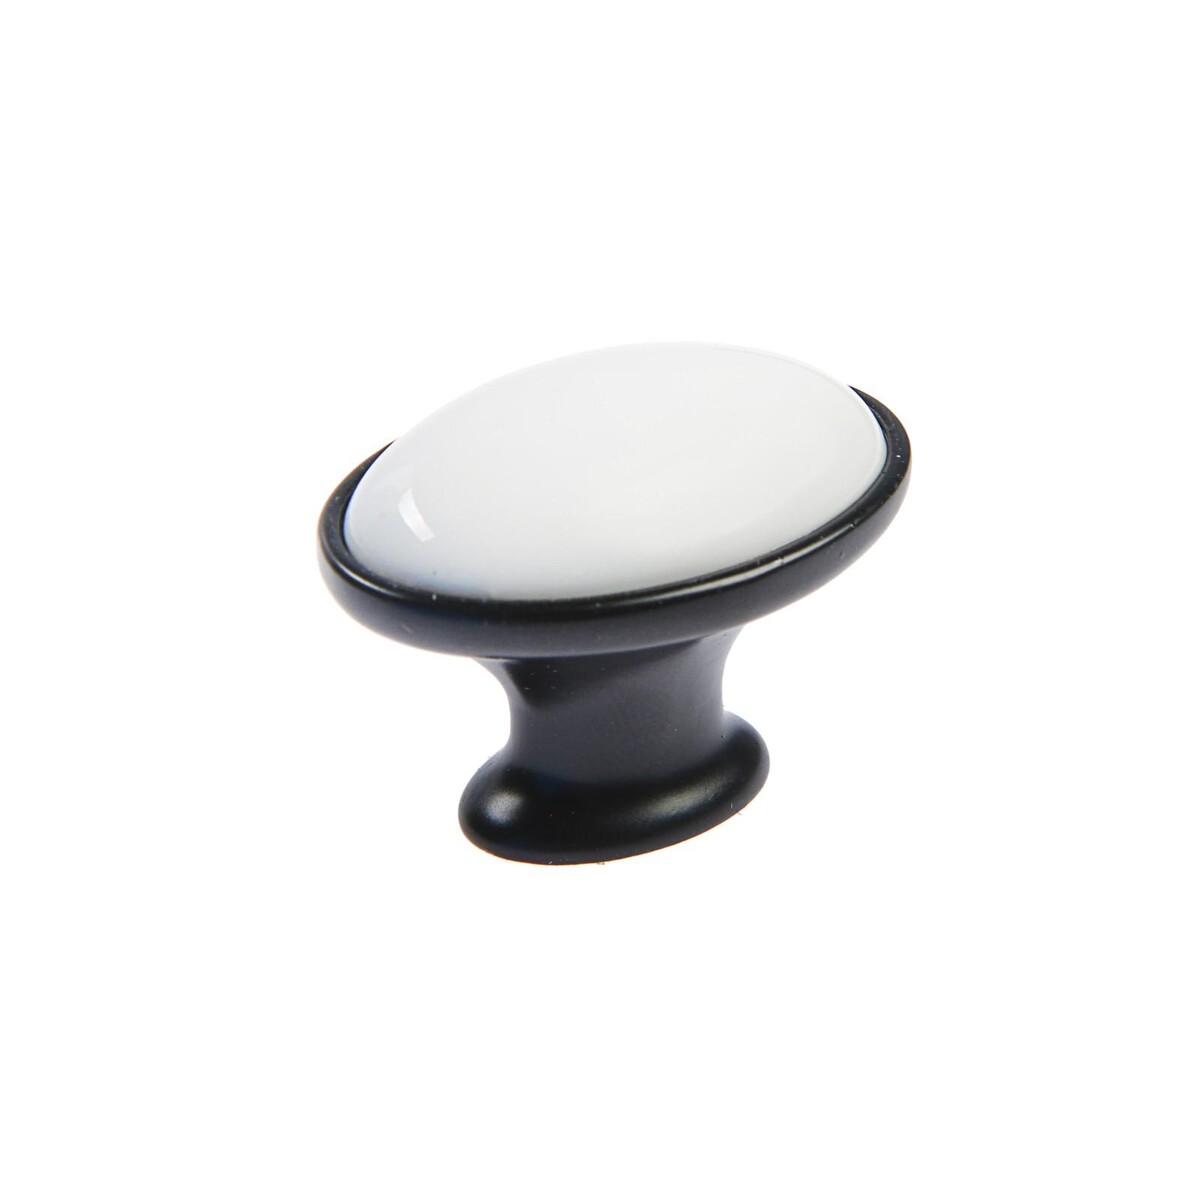 Ручка кнопка тундра рк023bl light, черная с белой вставкой